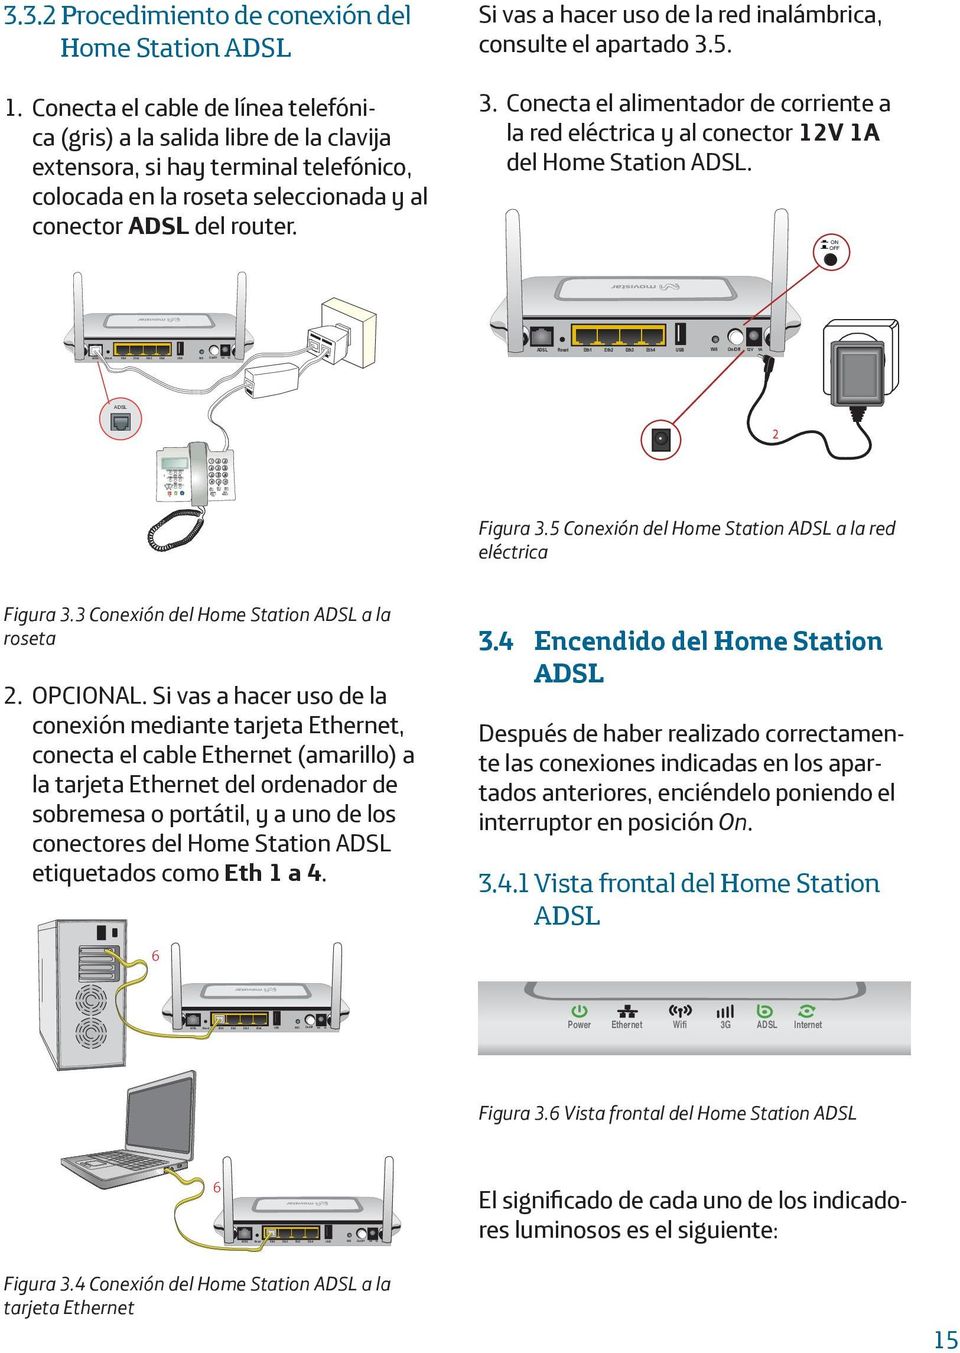 Si vas a hacer uso de la red inalámbrica, consulte el apartado 3.5. 3. Conecta el alimentador de corriente a la red eléctrica y al conector 12V 1A del Home Station ADSL.